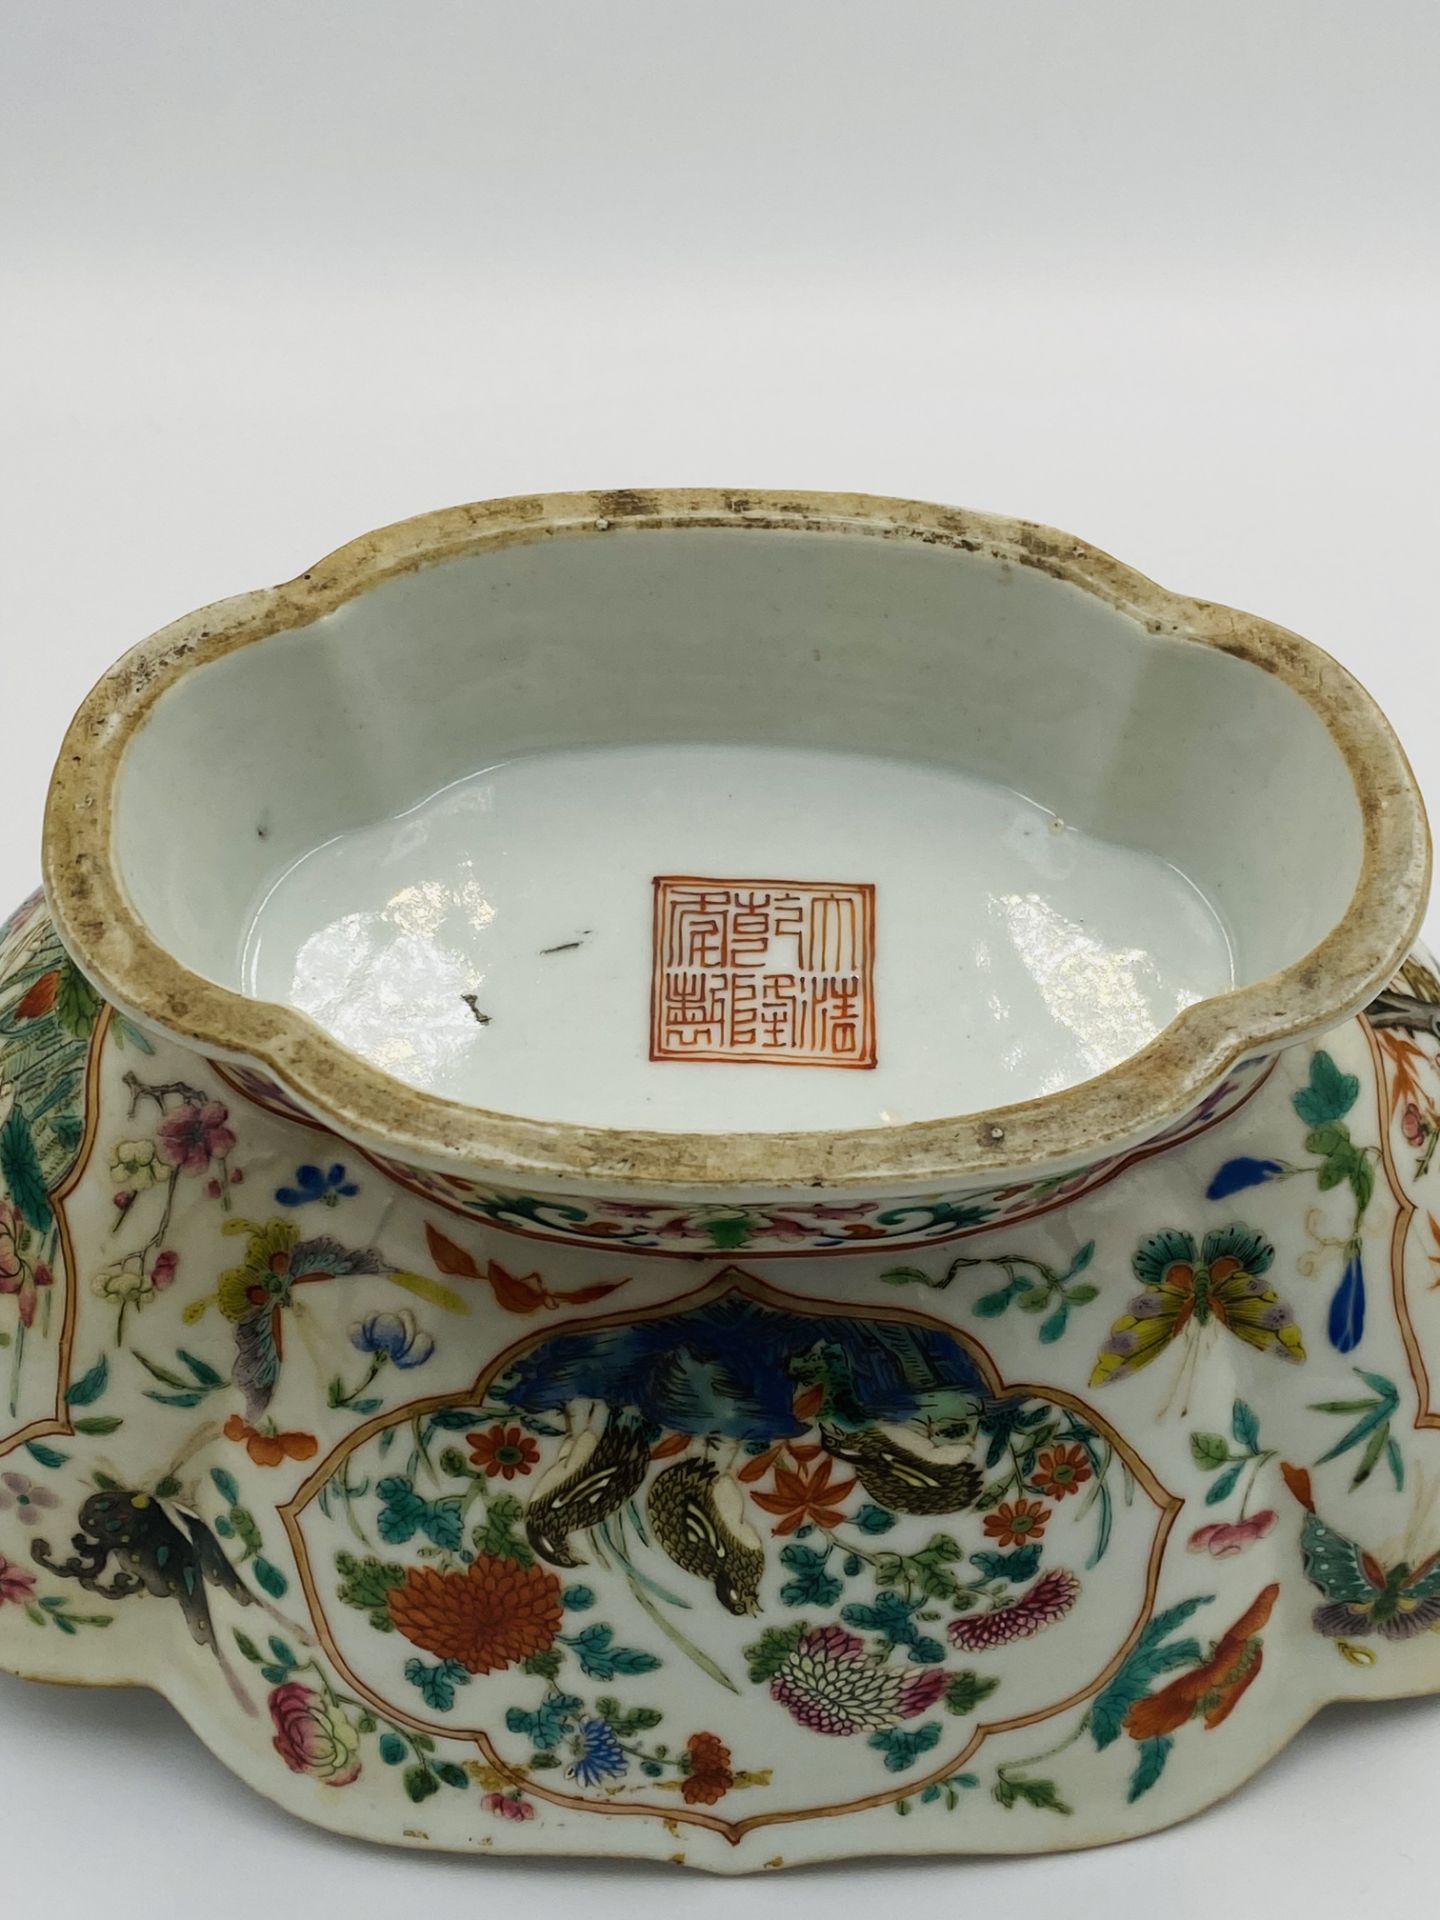 Chinese famille verte goldfish bowl - Image 4 of 7